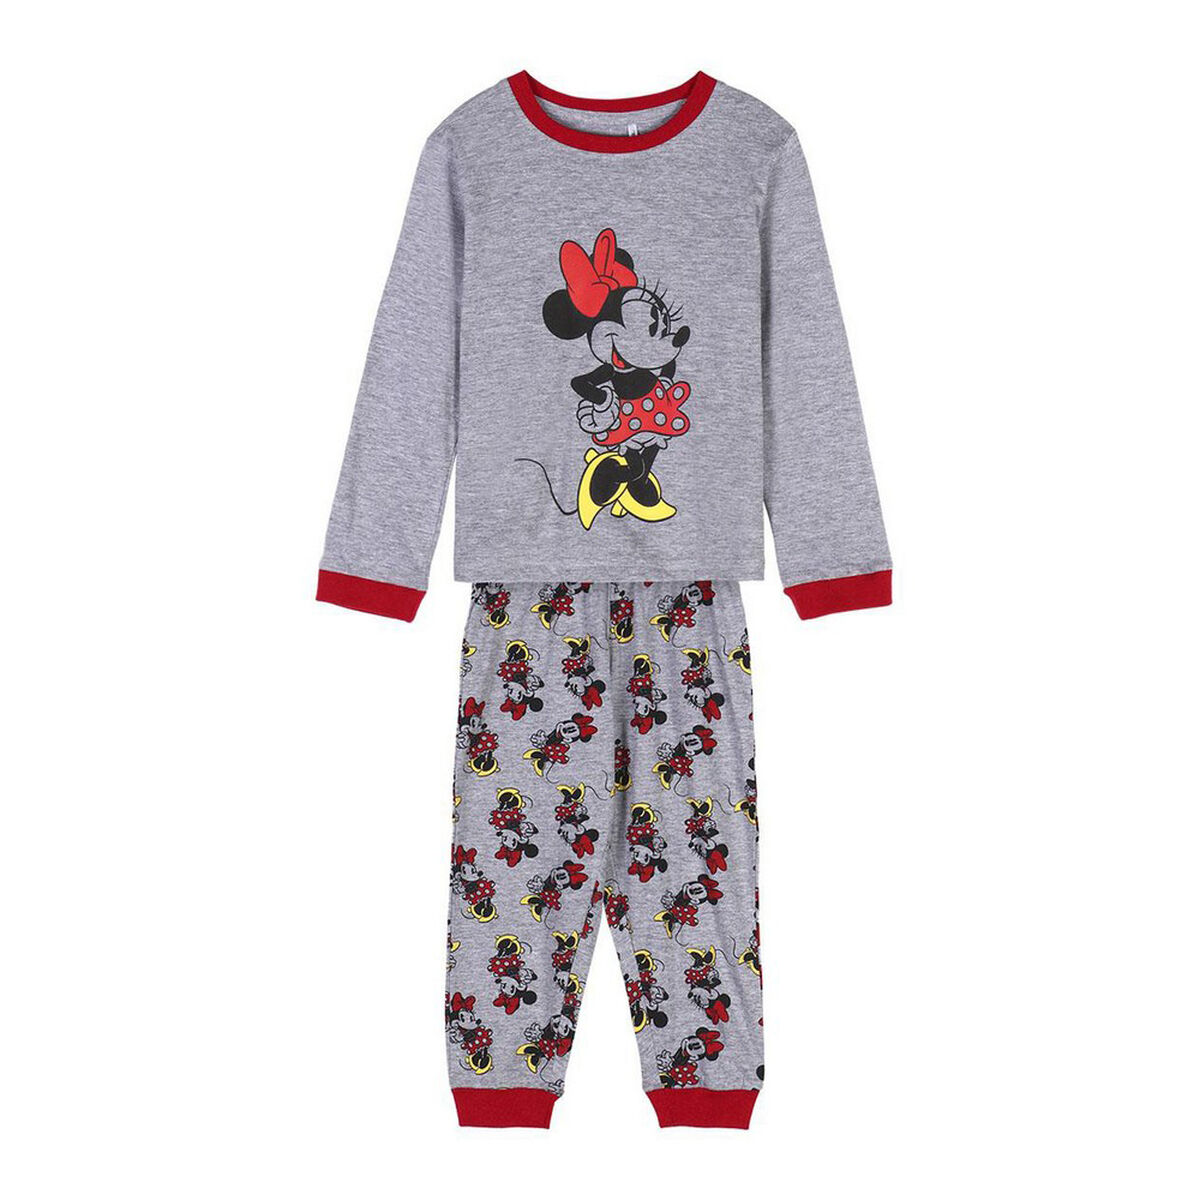 Osta tuote Pyjamat Lasten Minnie Mouse Harmaa (Koko: 6 vuotta) verkkokaupastamme Korhone: Lelut & Asut 20% alennuksella koodilla VIIKONLOPPU